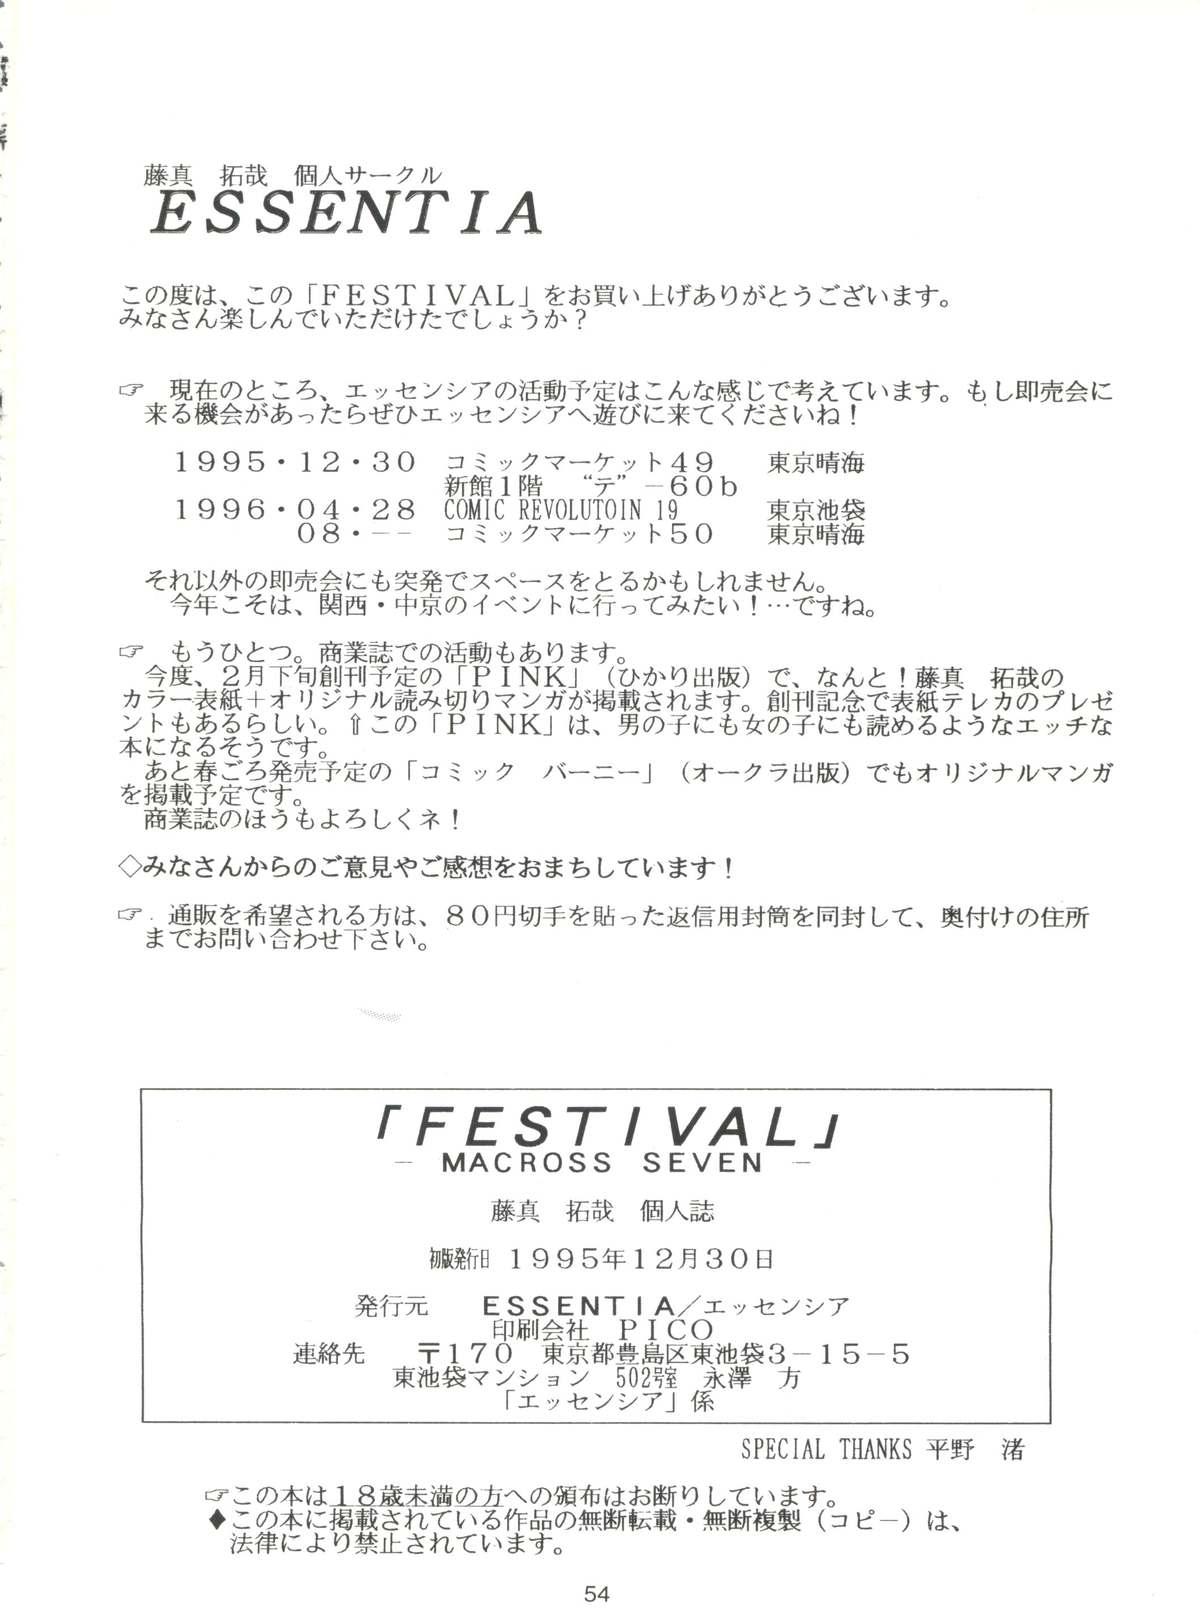 Festival 54